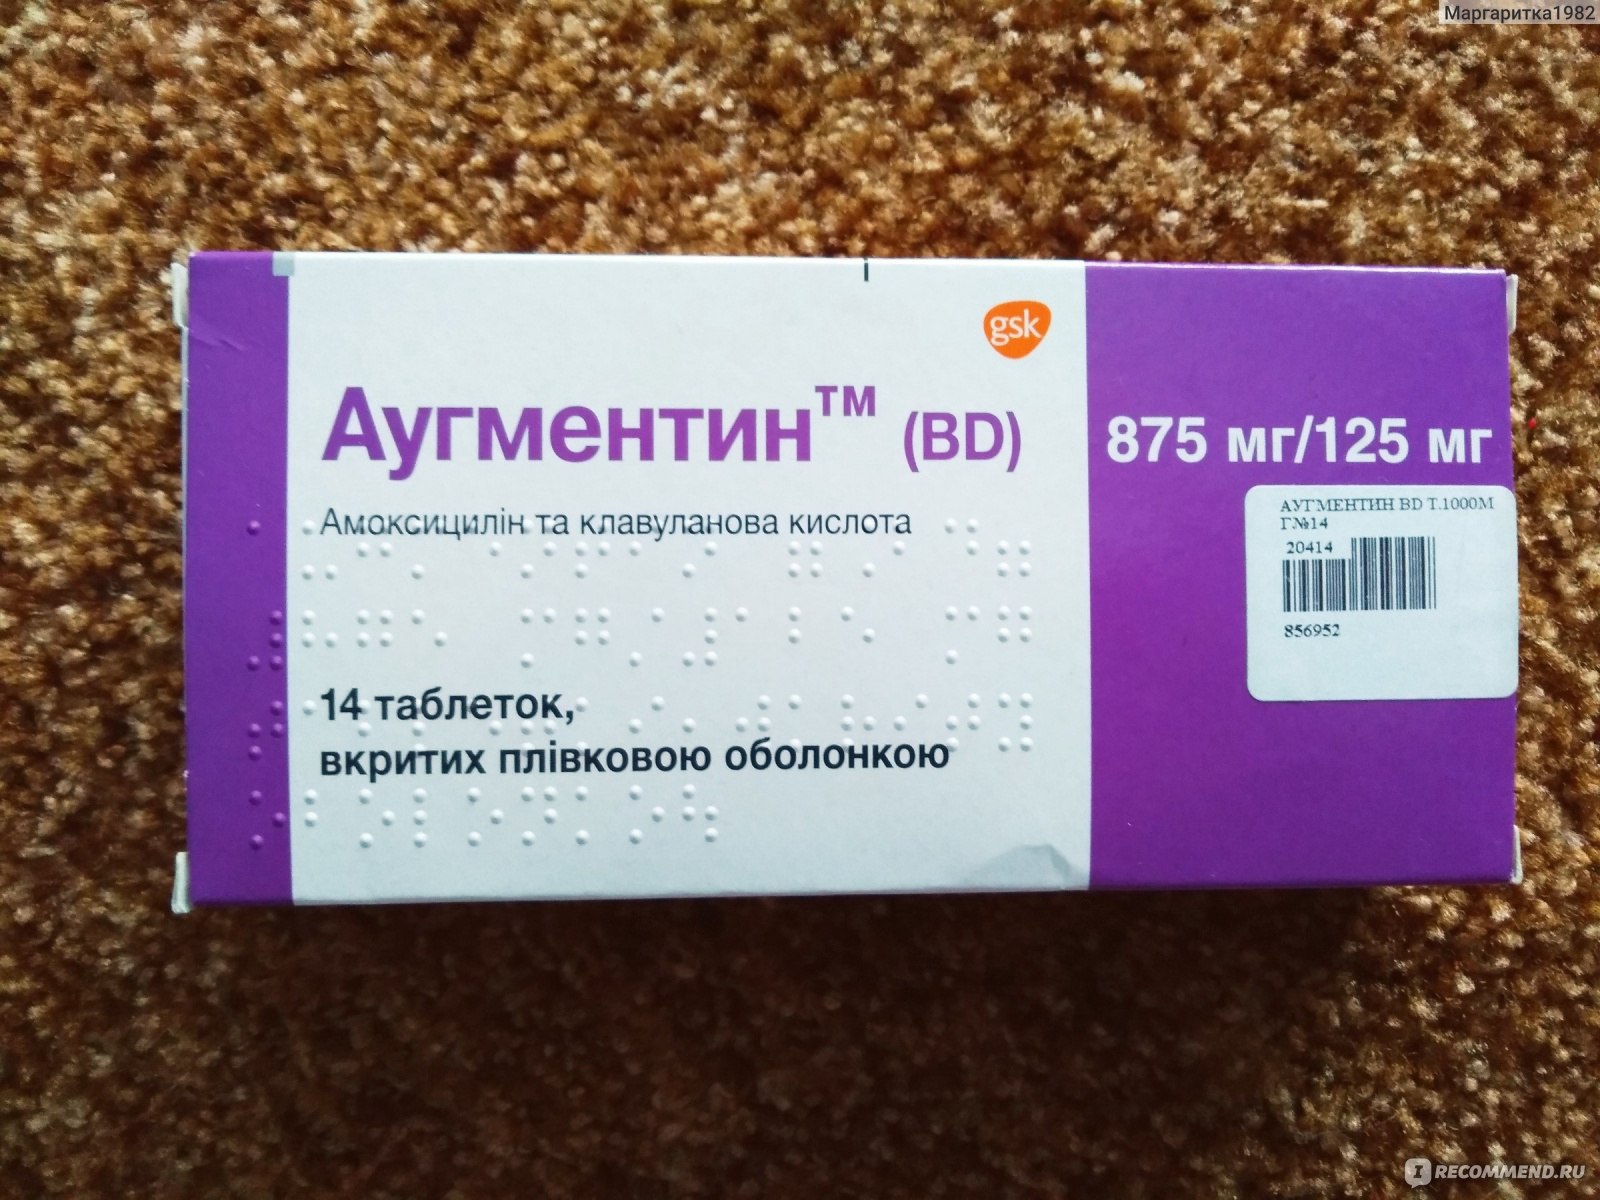 Ангину можно лечить антибиотиками или нет - ответ врача | РБК Украина